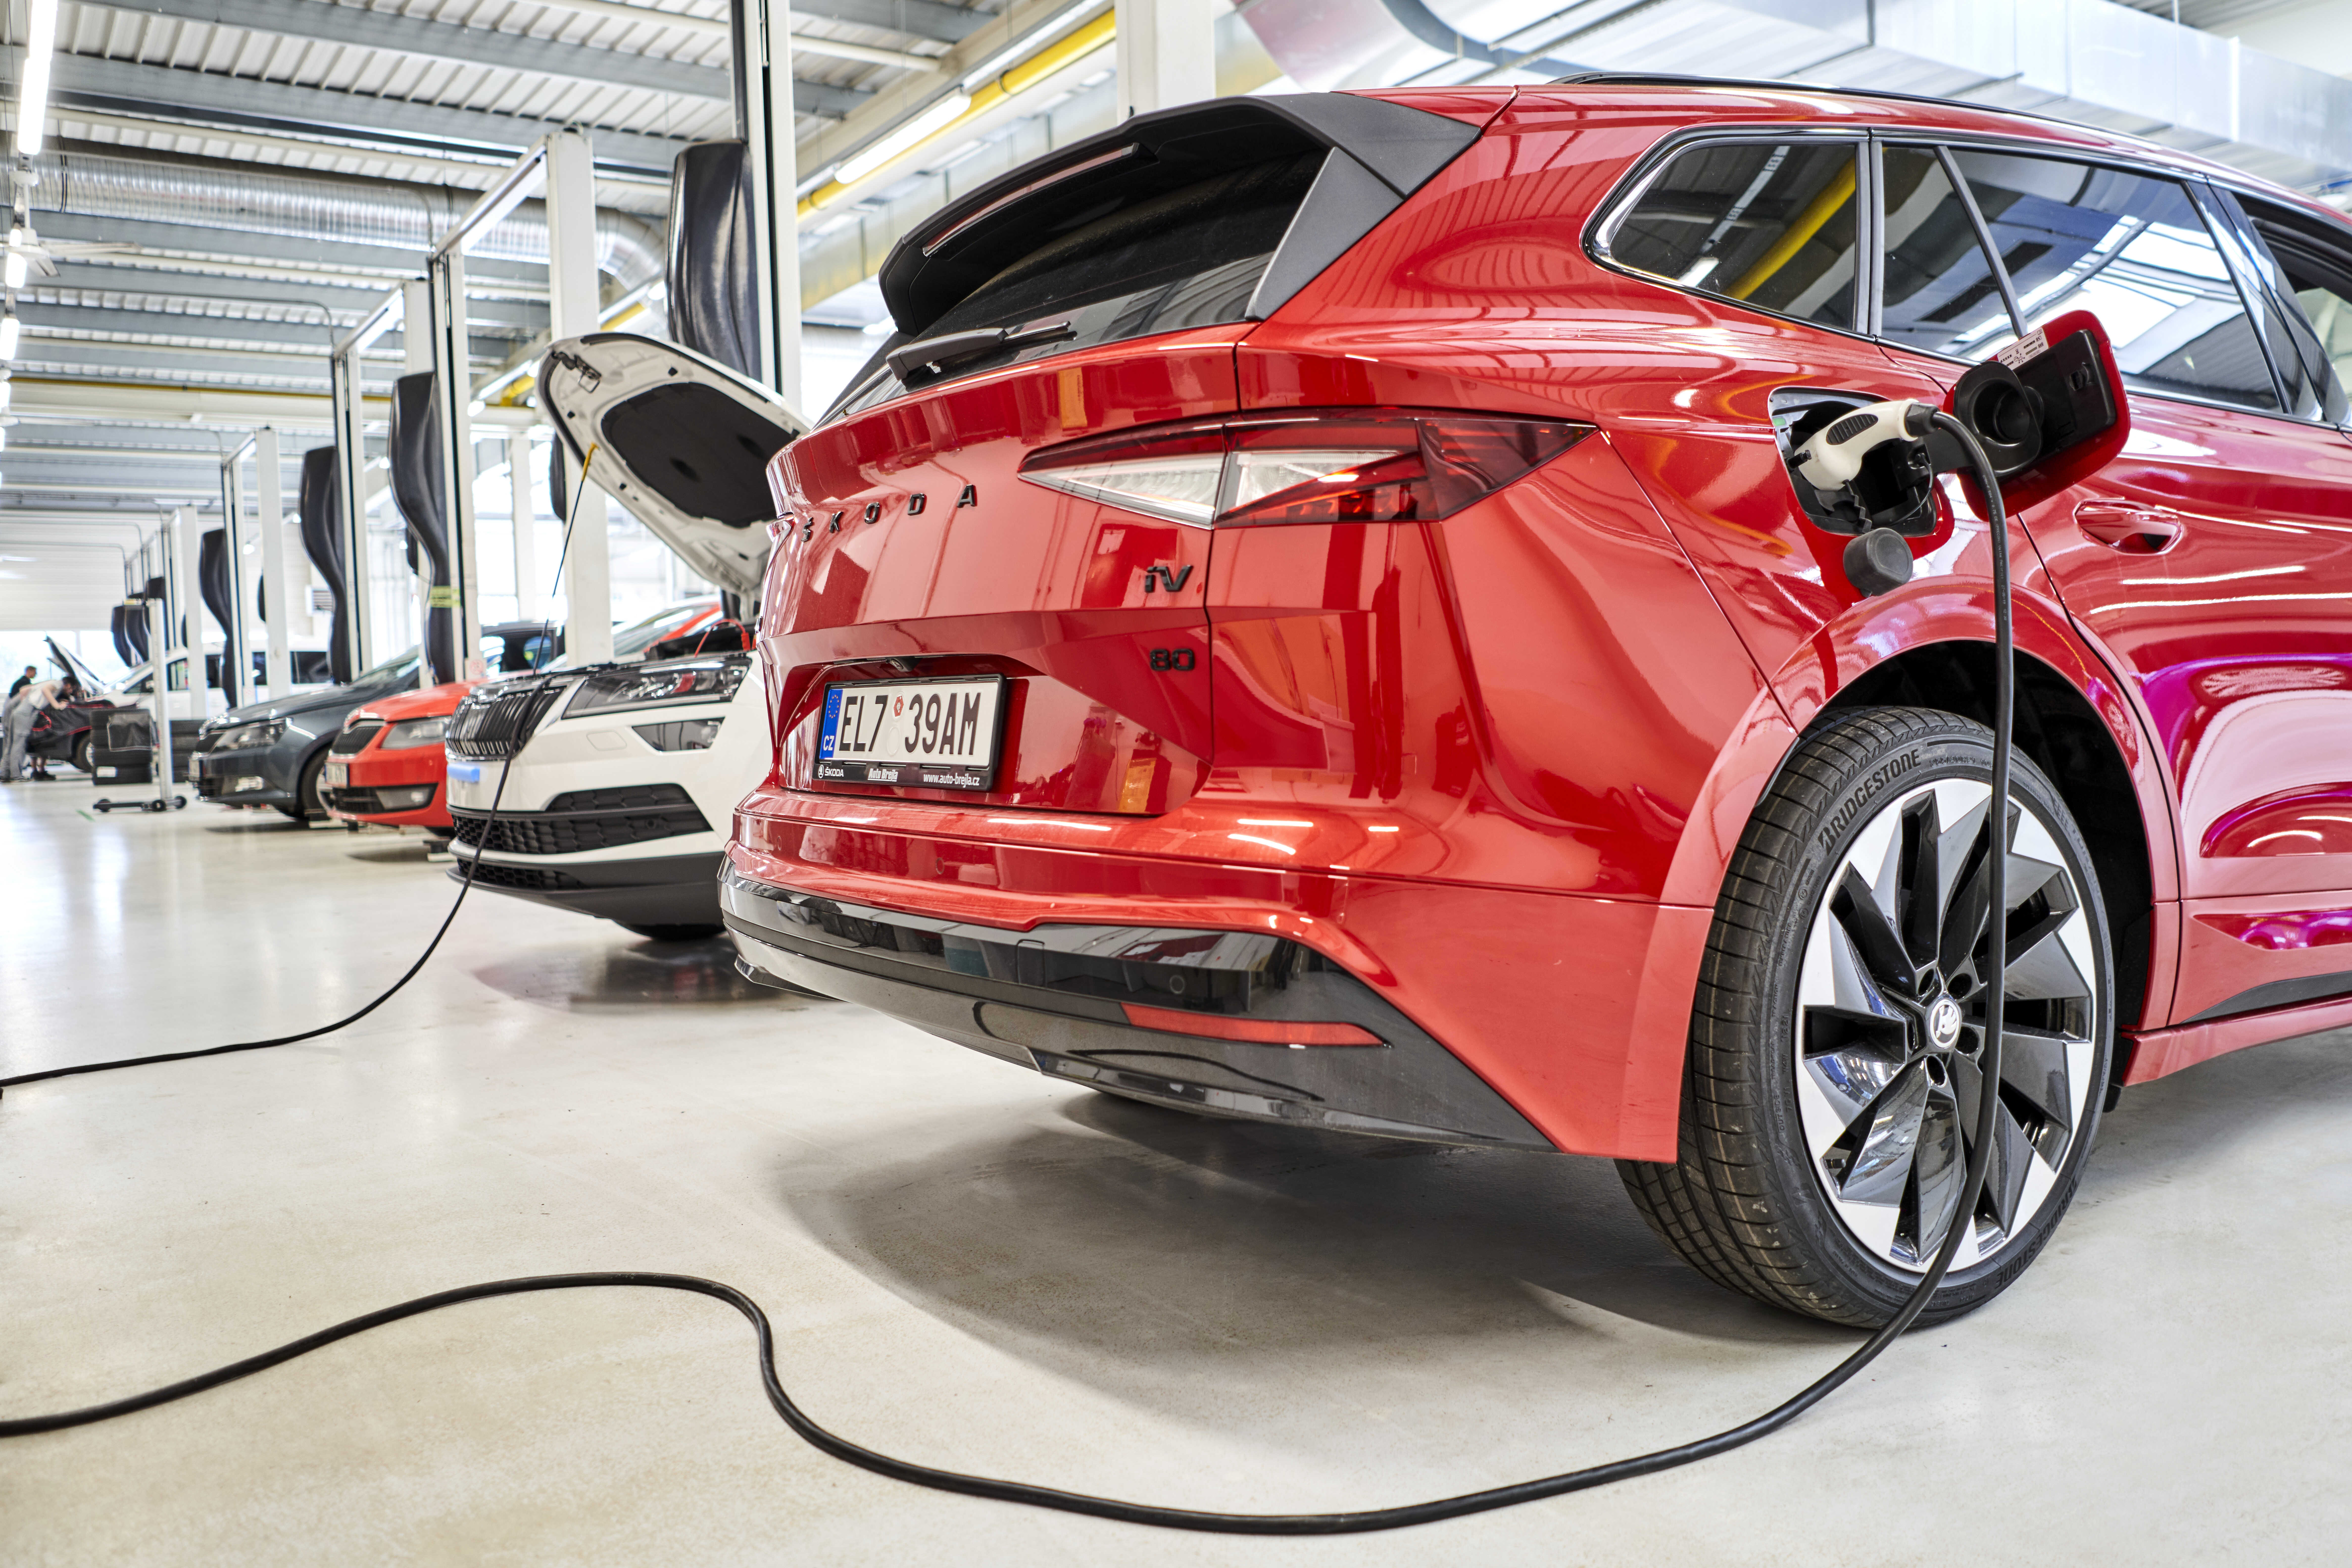 La riparazione delle auto elettriche Škoda non è una prerogativa solo di alcune officine: gli esperti aiutano in tutto il Paese